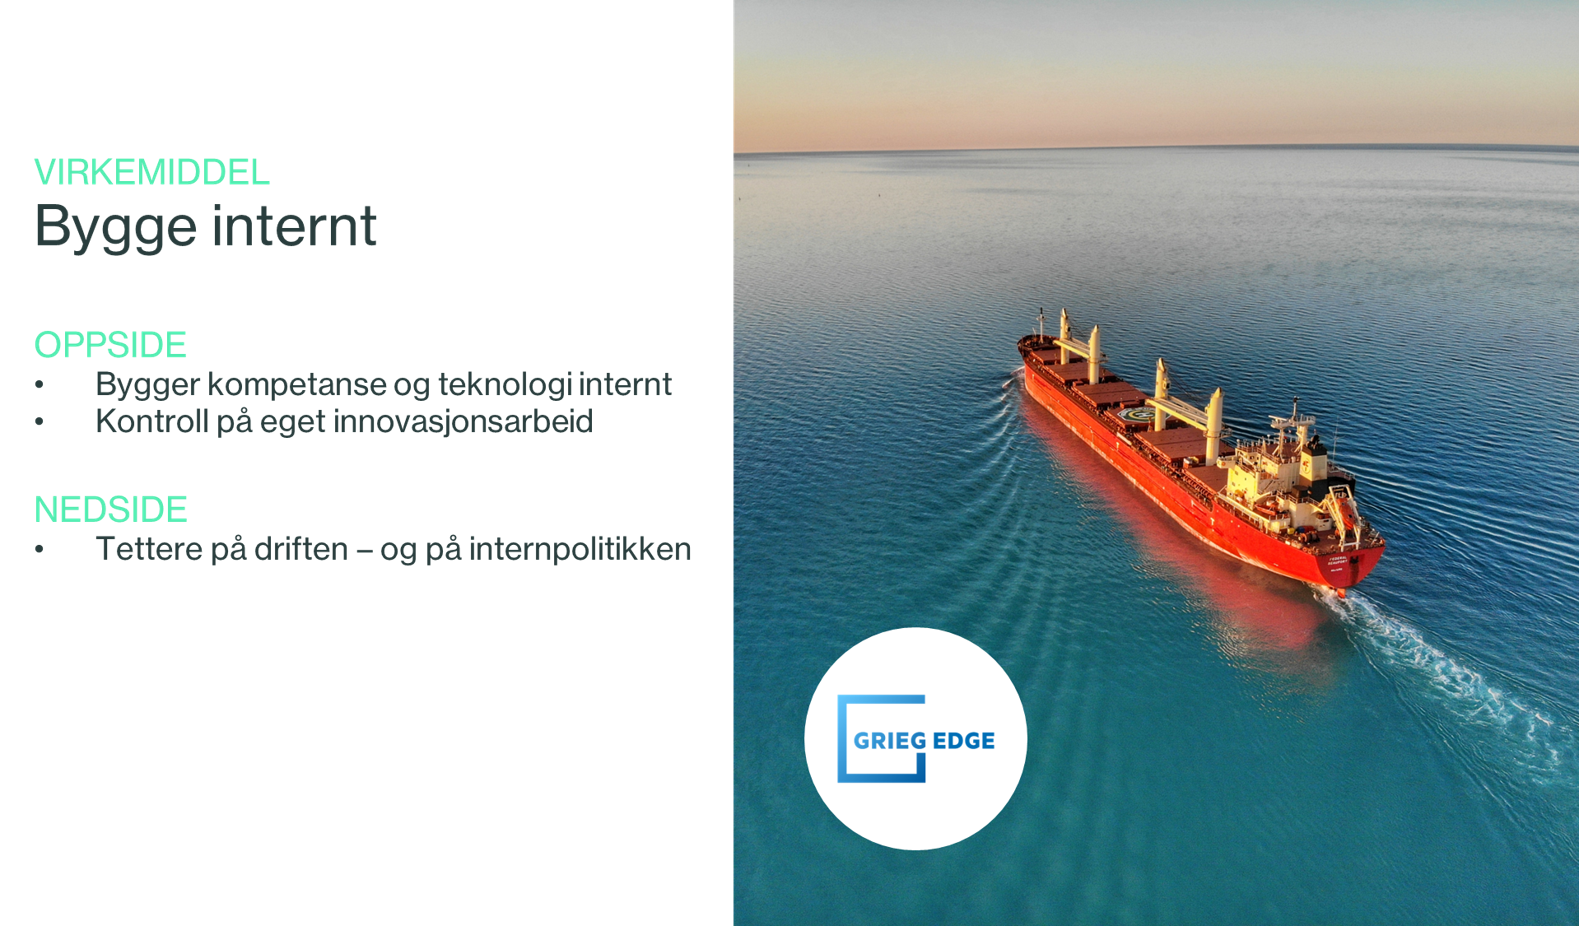 Grieg Maritime Group har opprettet sin egen innovasjonsavdeling Grieg. Grieg Egde har som mål å identifisere og utvikle nye bærekraftige forretningsmuligheter innen shipping, enten alene eller i samarbeid med andre.